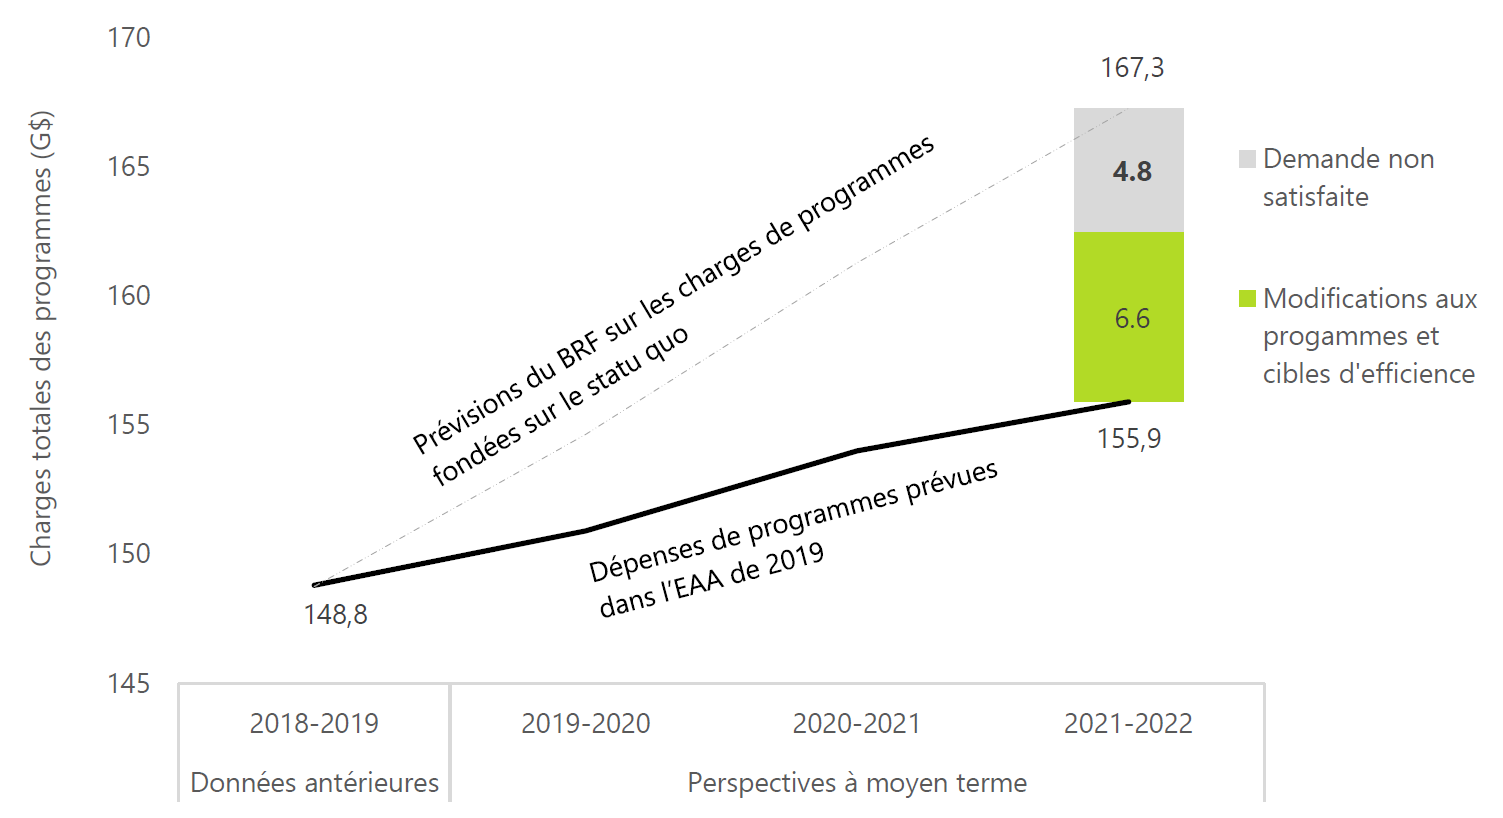 La demande de services publics dépassera les dépenses prévues du gouvernement de 4,8 milliards en 2021-2022